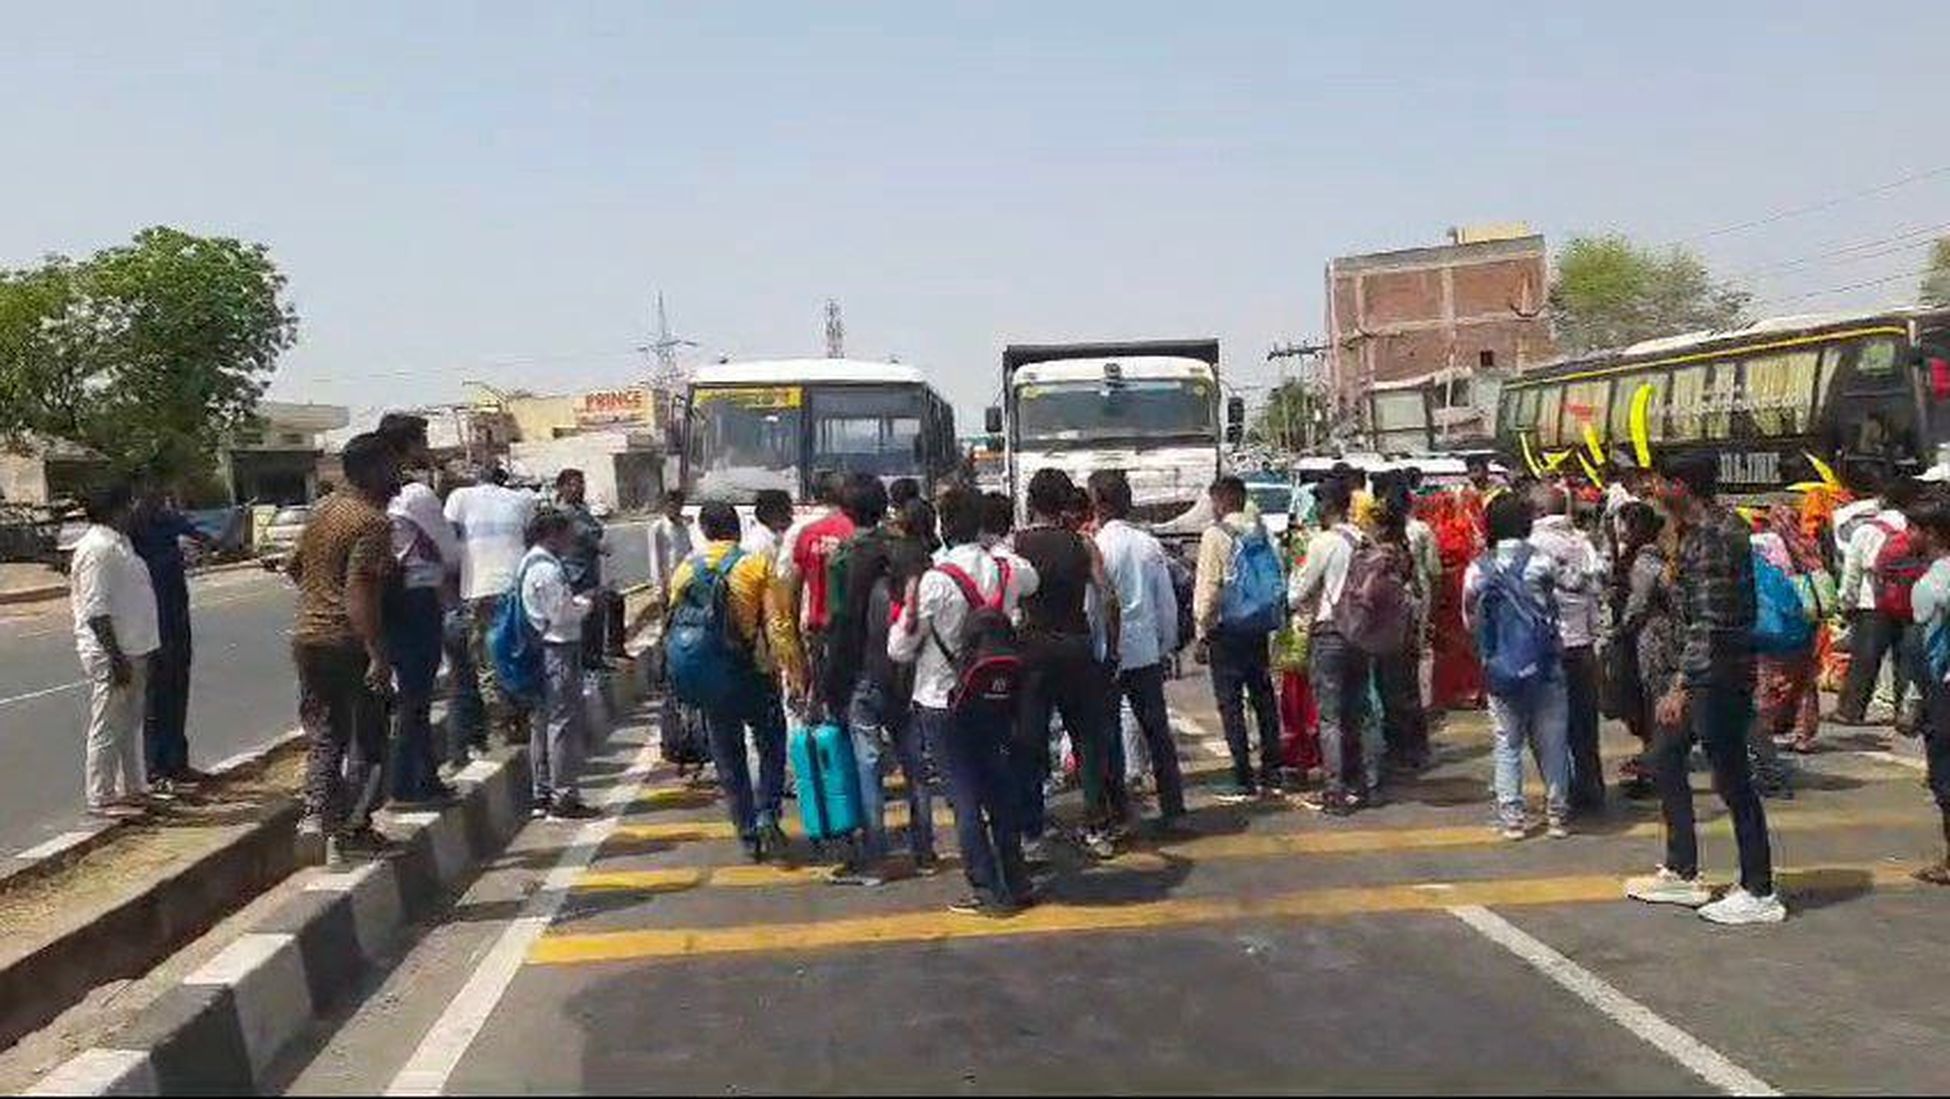 परिवहन दल ने बीच रास्ते बस का रुकवाकर किया अधिग्रहण, गुस्साए यात्रियों ने लगाया
जाम